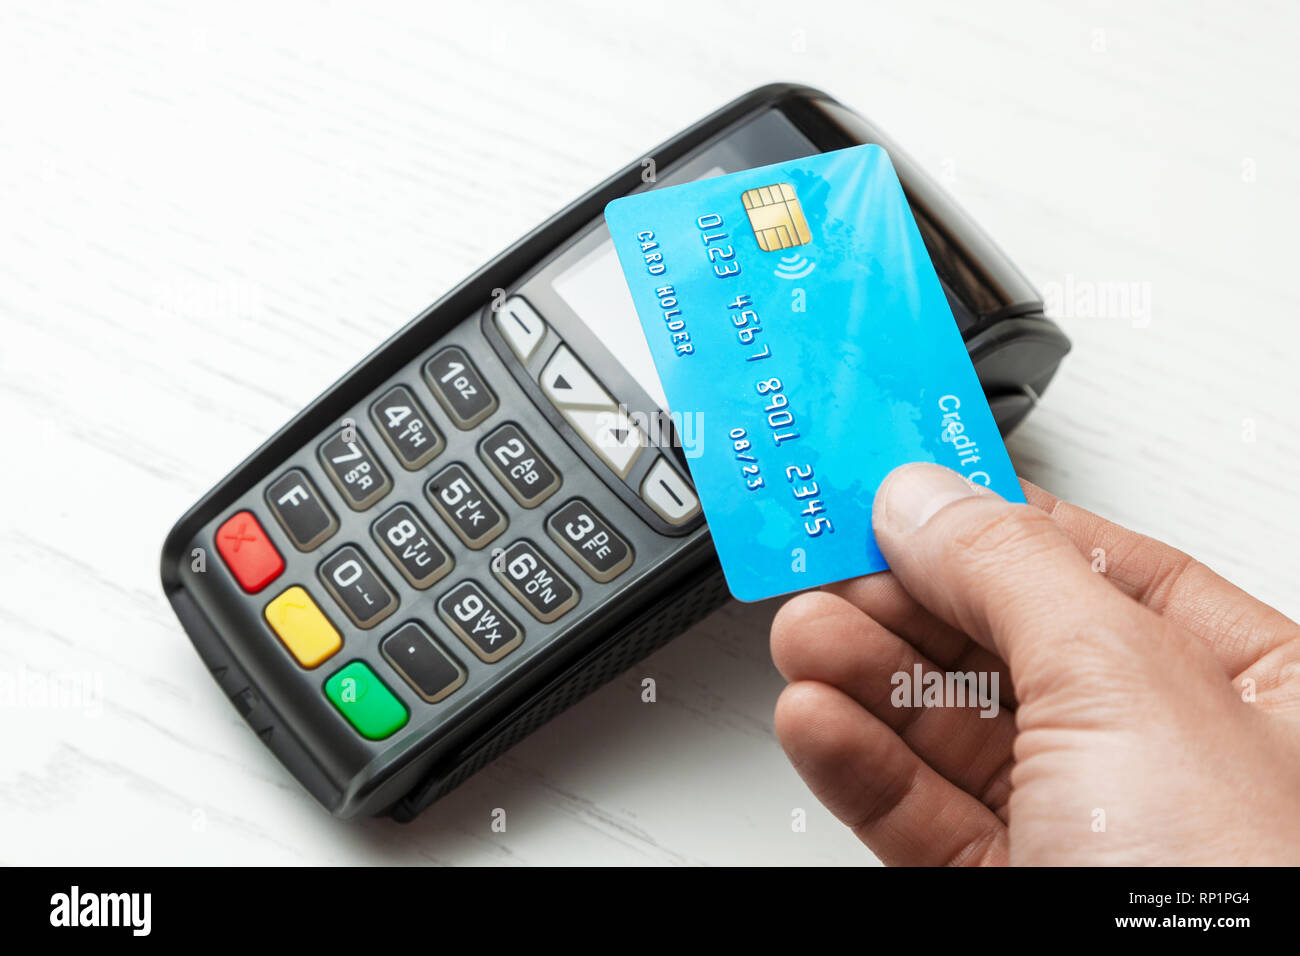 Terminale POS, macchina di pagamento con carta di credito su sfondo bianco. Il pagamento senza contatto con la tecnologia NFC Foto Stock